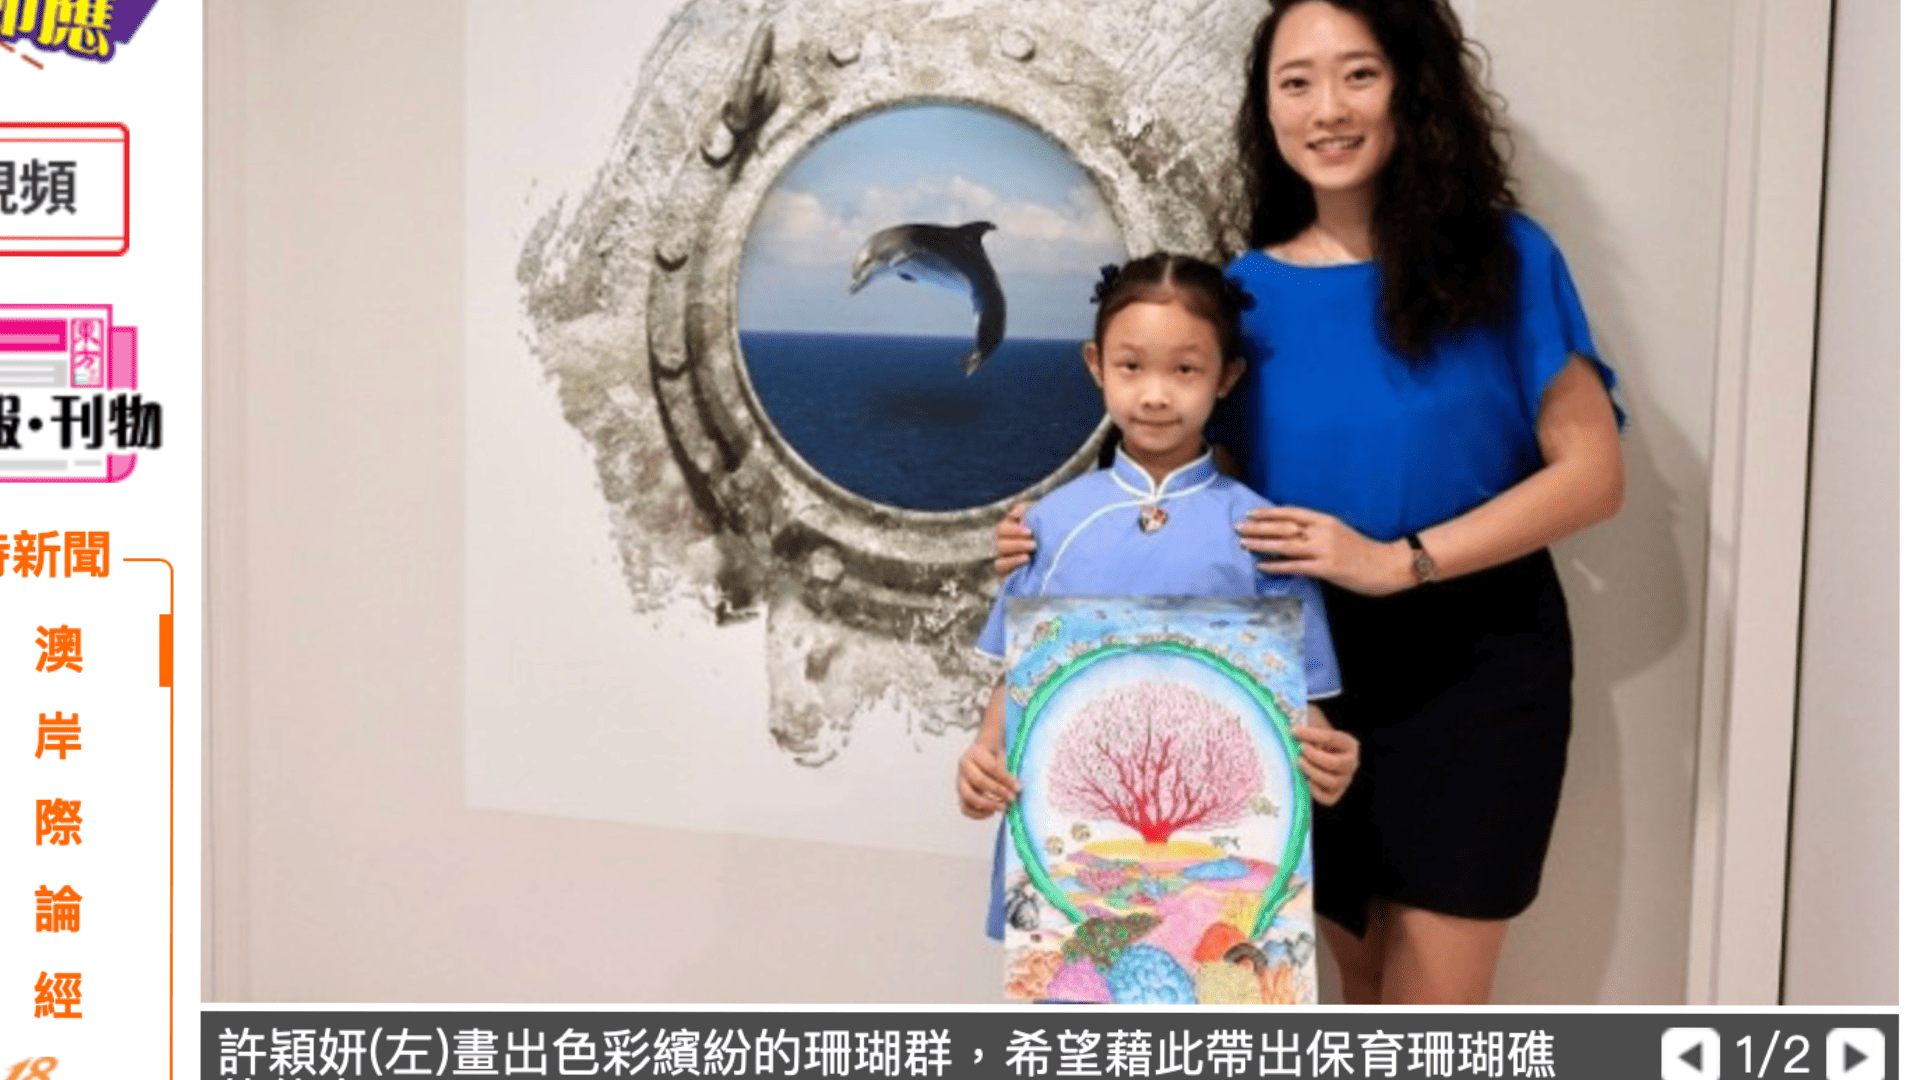 昔日東方-小學生畫出繽紛色彩 盼救珊瑚海